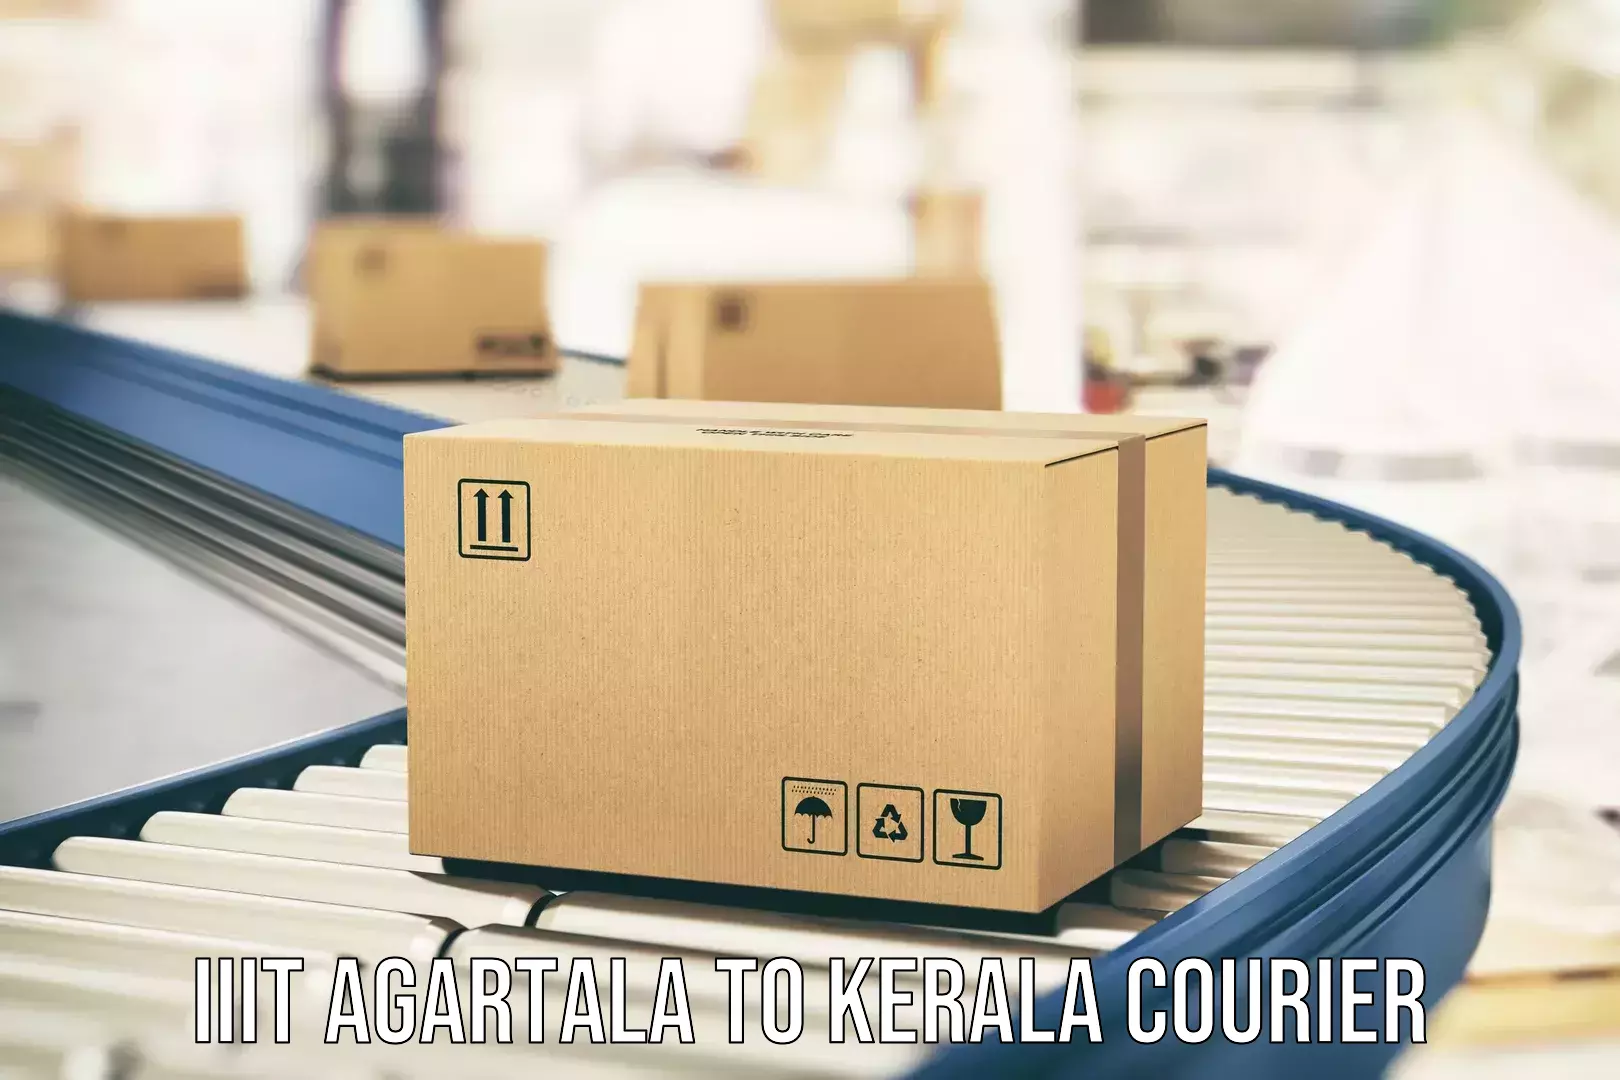 Reliable household moving IIIT Agartala to Kerala